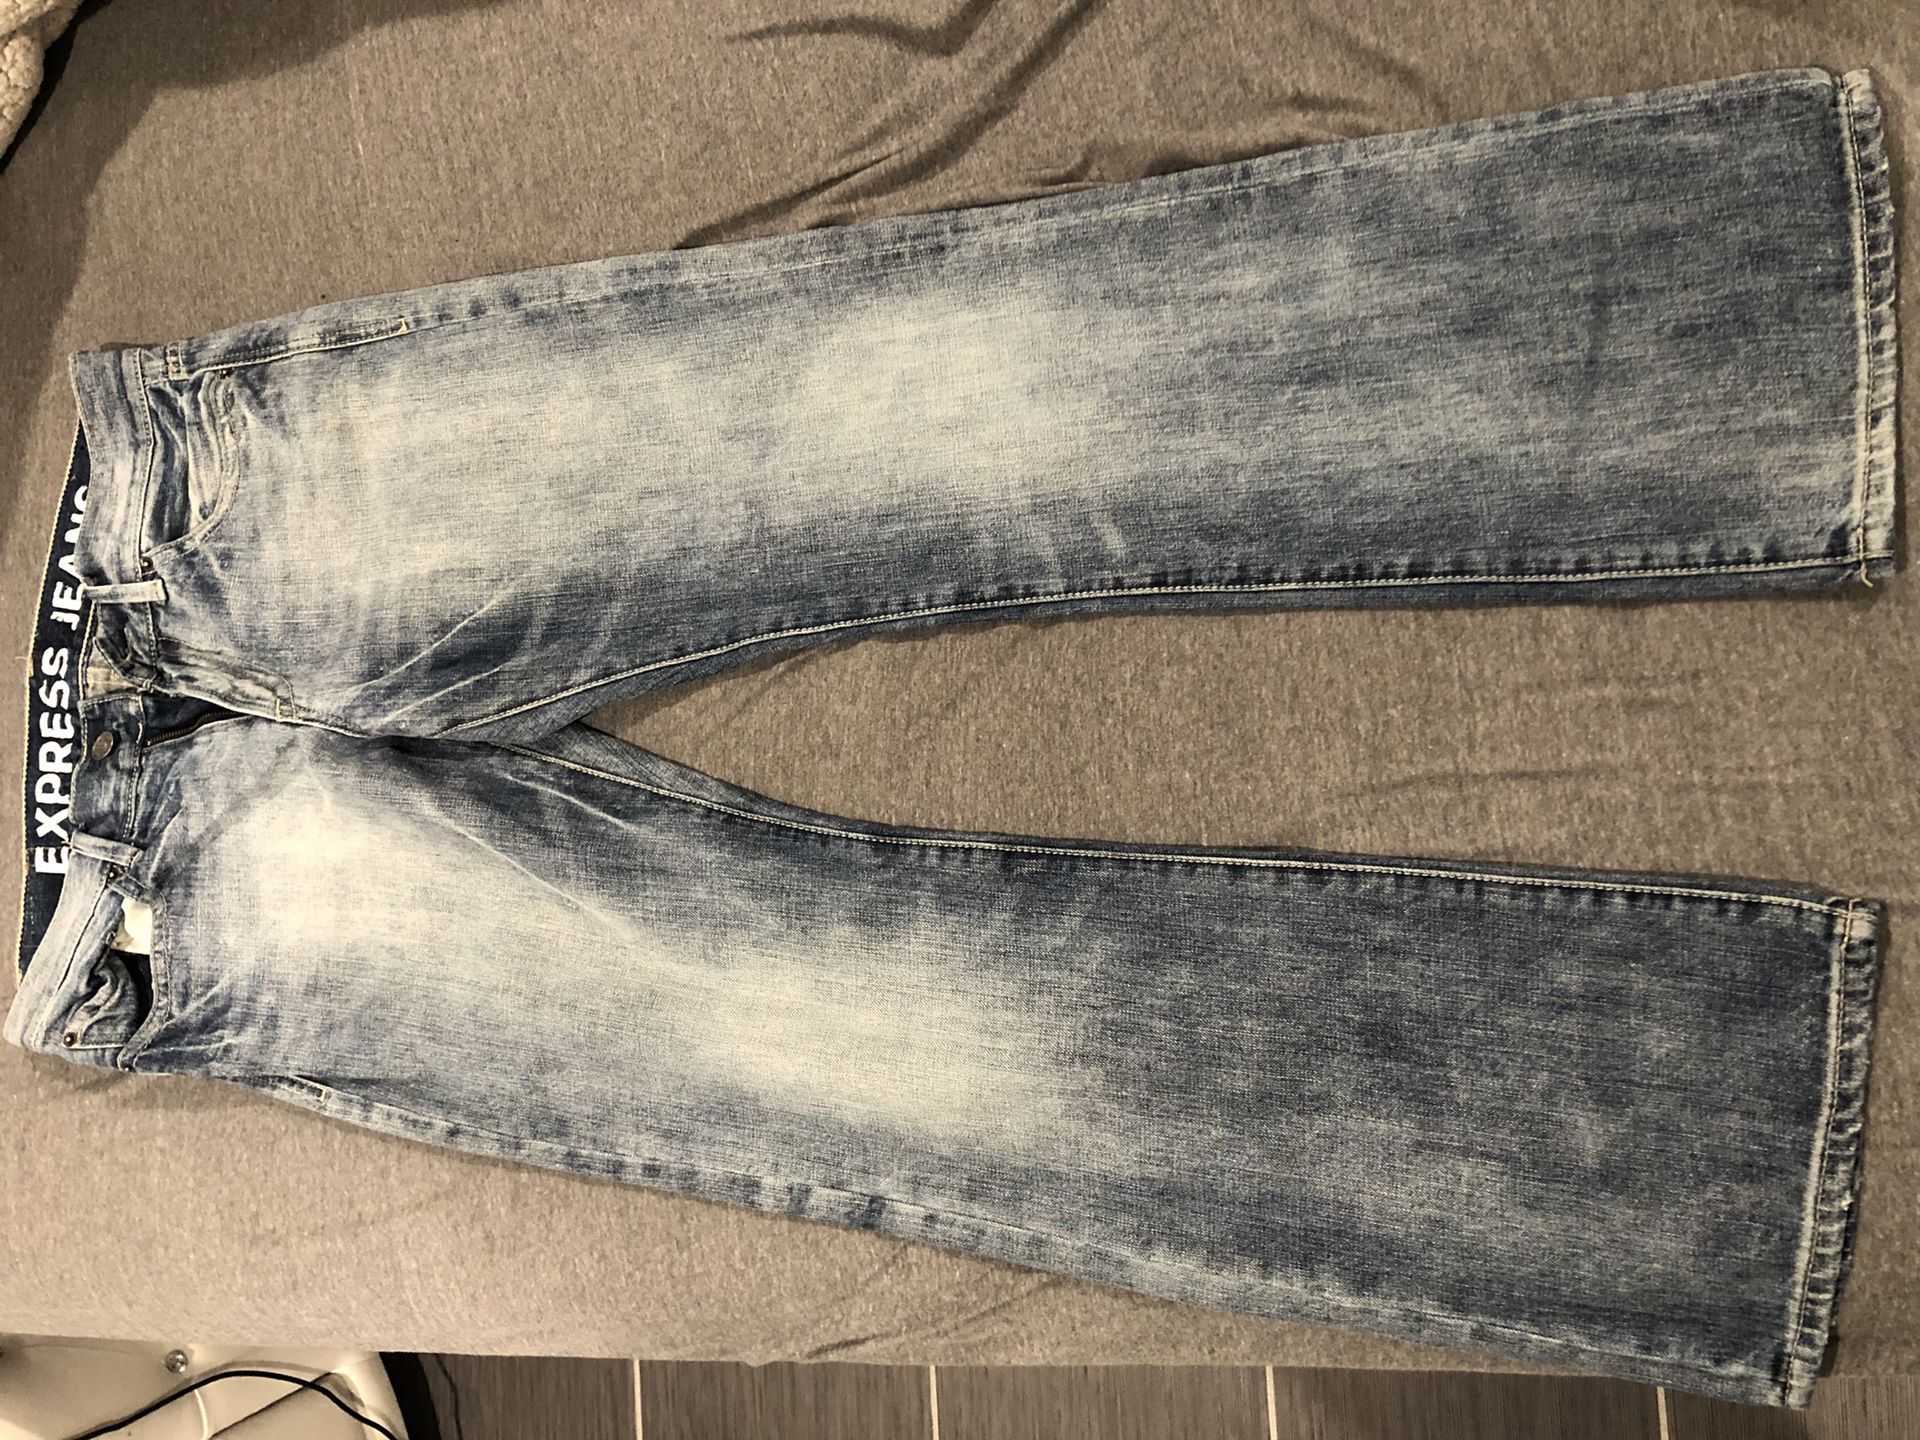 Jeans pants